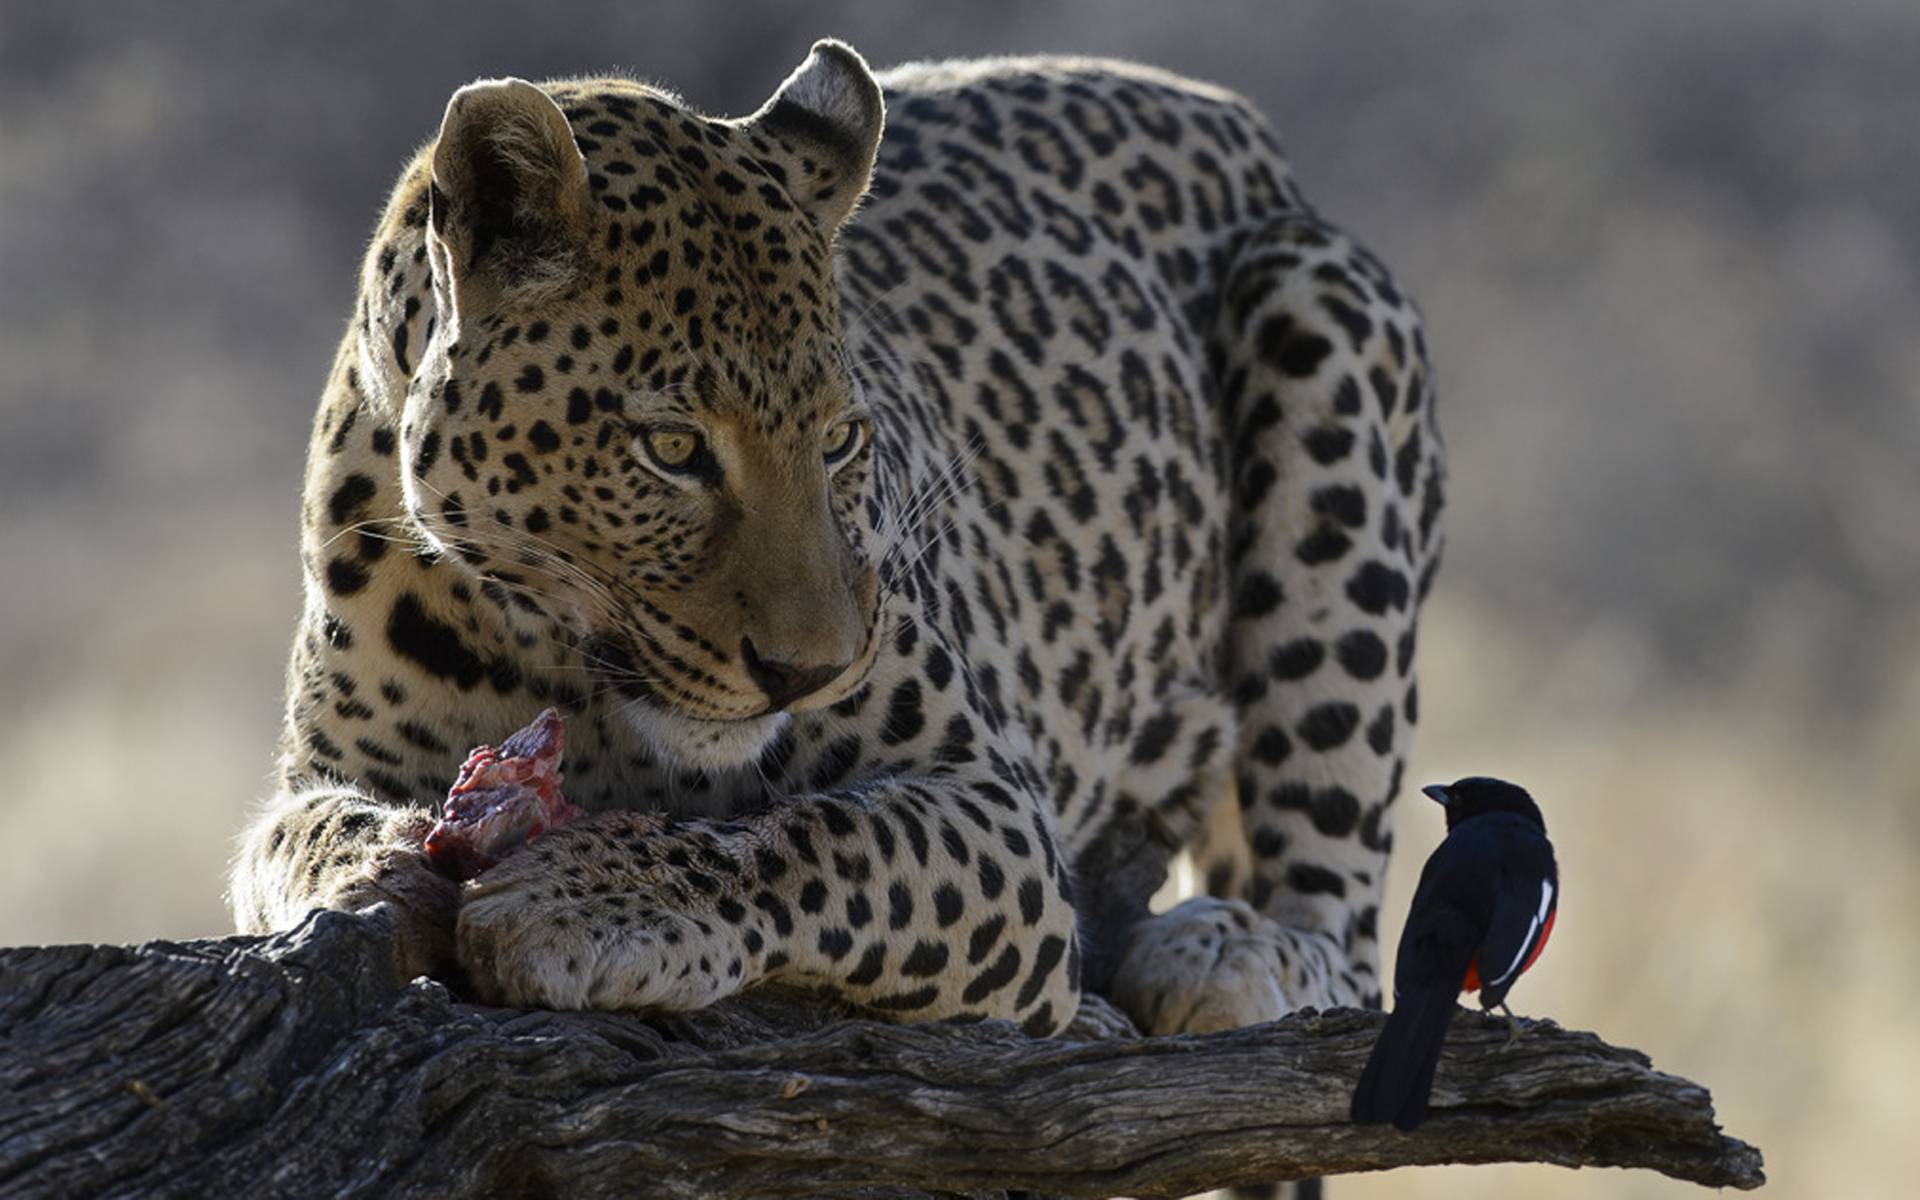 James Kobacker - Leopard and bird - wallpaper.jpg